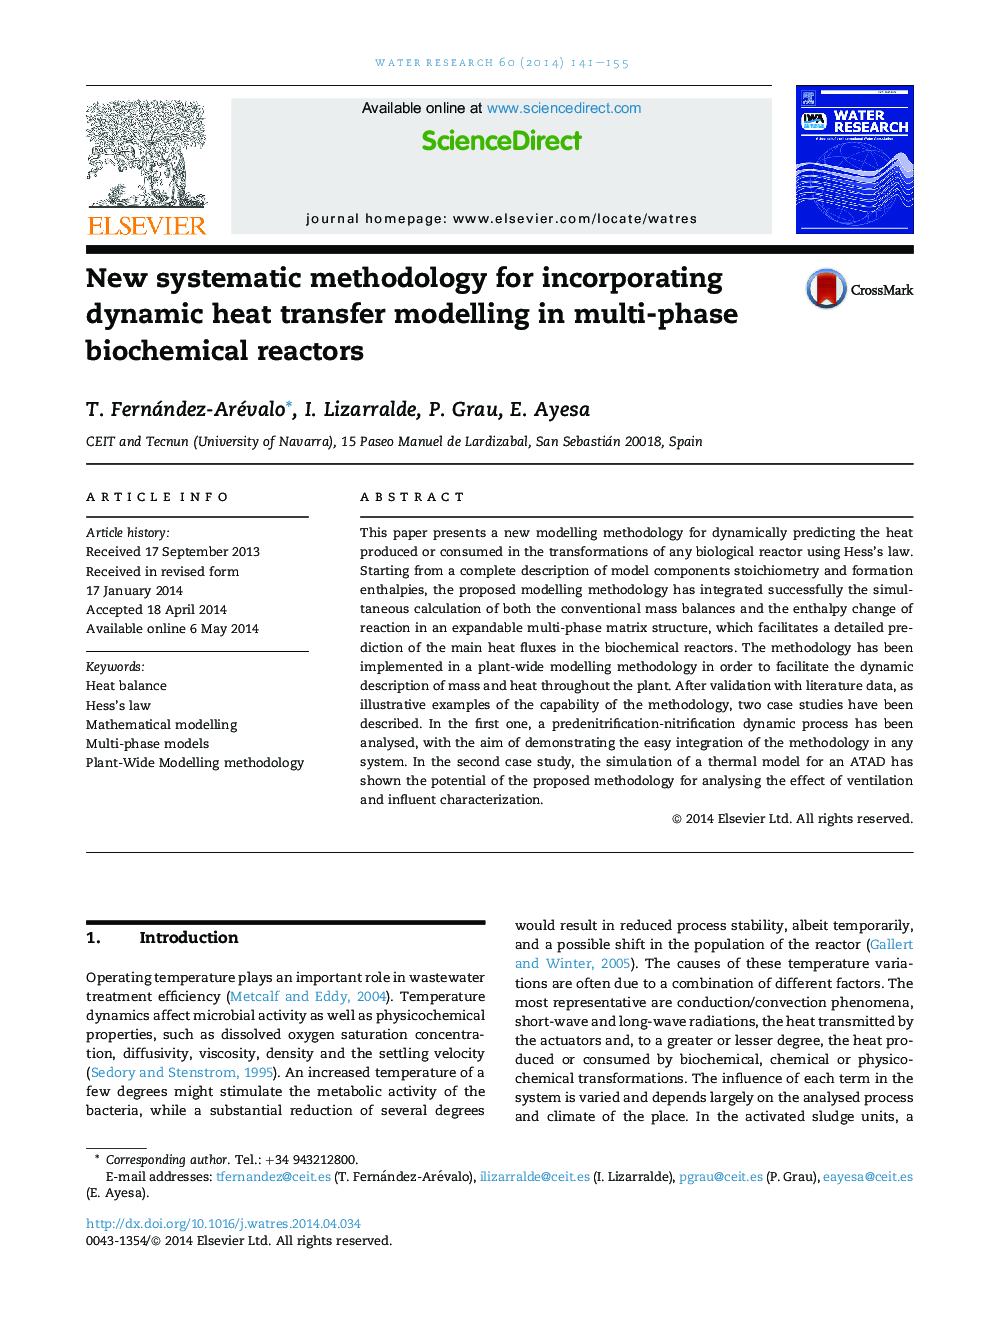 روش جدید سیستماتیک برای ترکیب مدلسازی انتقال حرارت پویا در راکتورهای بیوشیمی چند فاز 